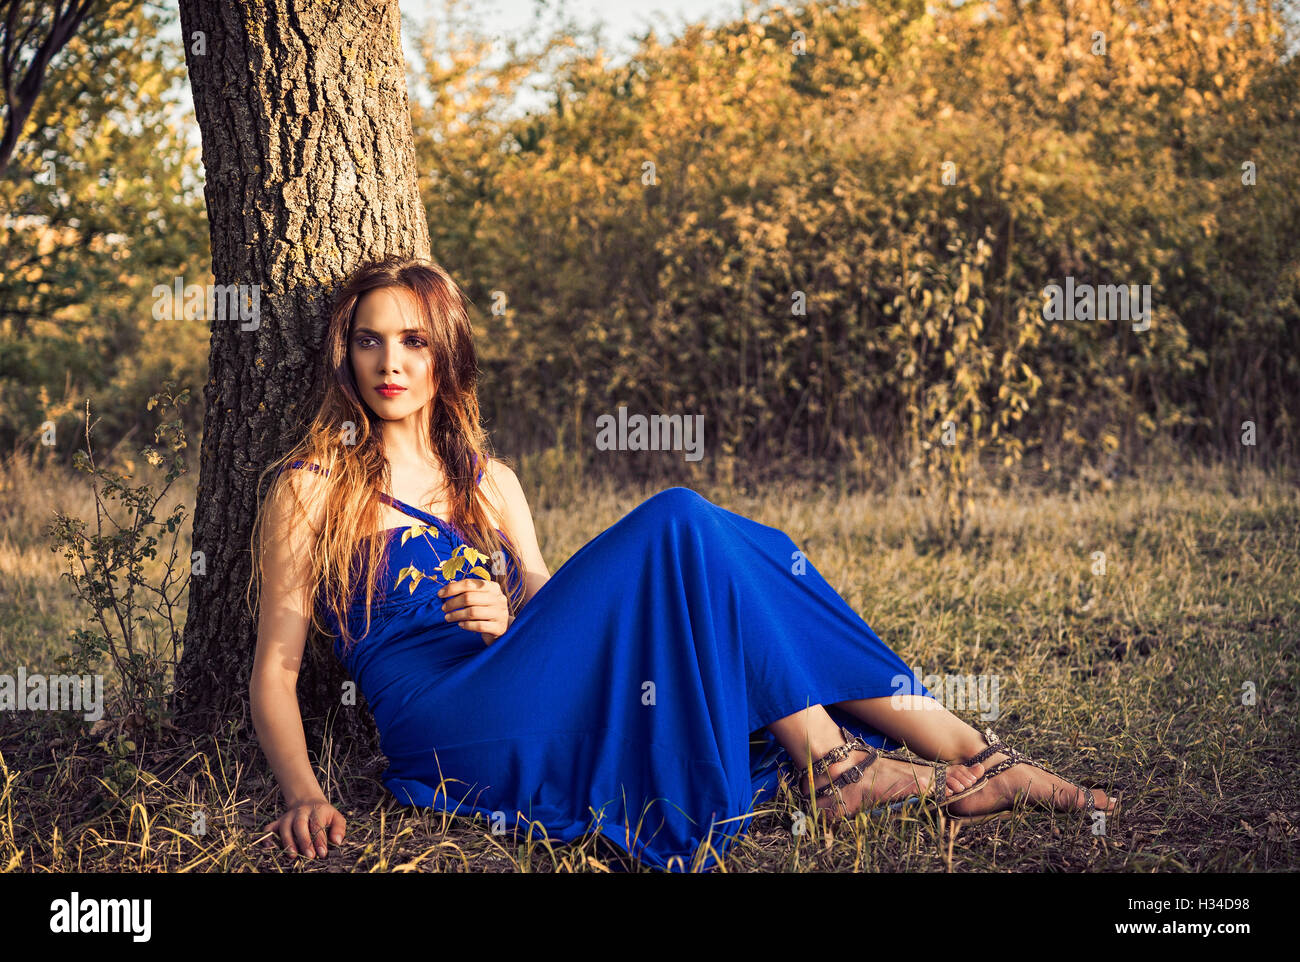 Belle jeune femme assise en vertu de l'arbre. Heure du coucher de soleil. Banque D'Images